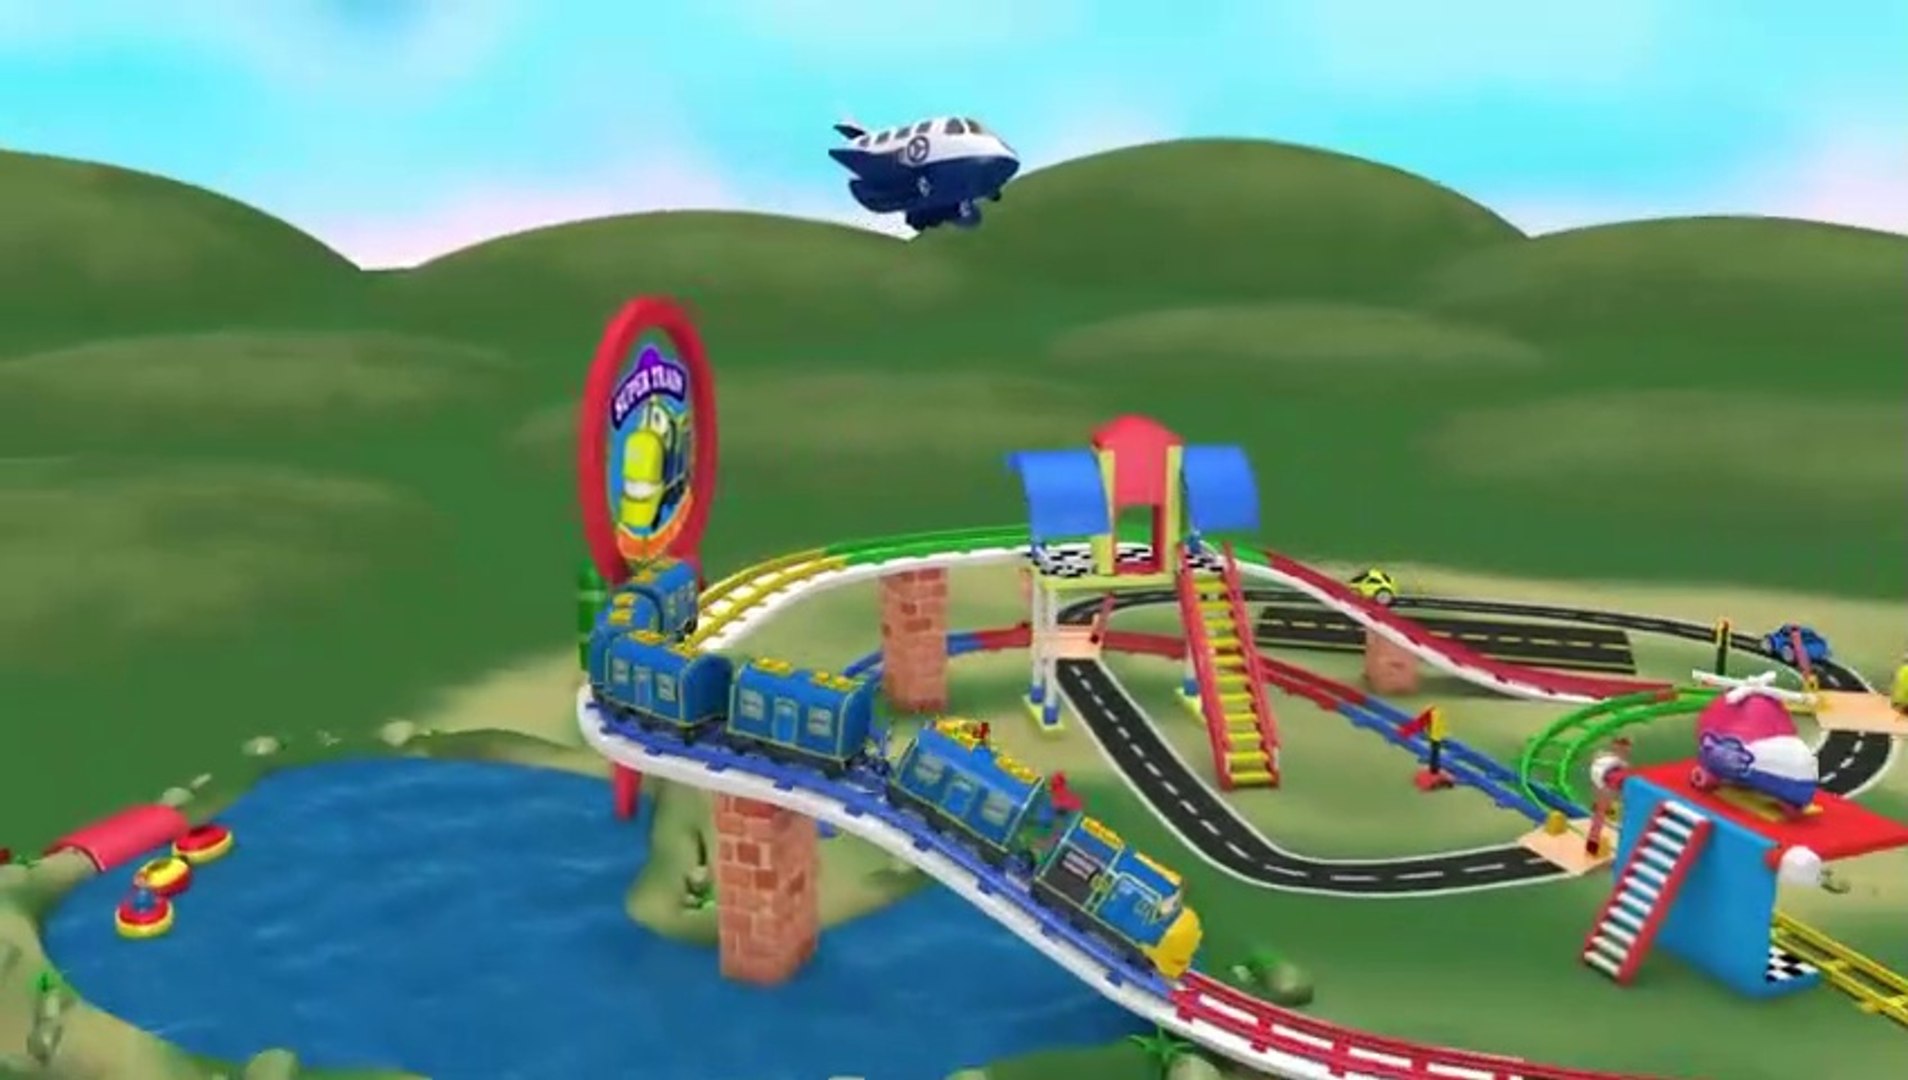 Chu Chu Train Cartoon Video for Kids Fun - Toy Factory - video Dailymotion